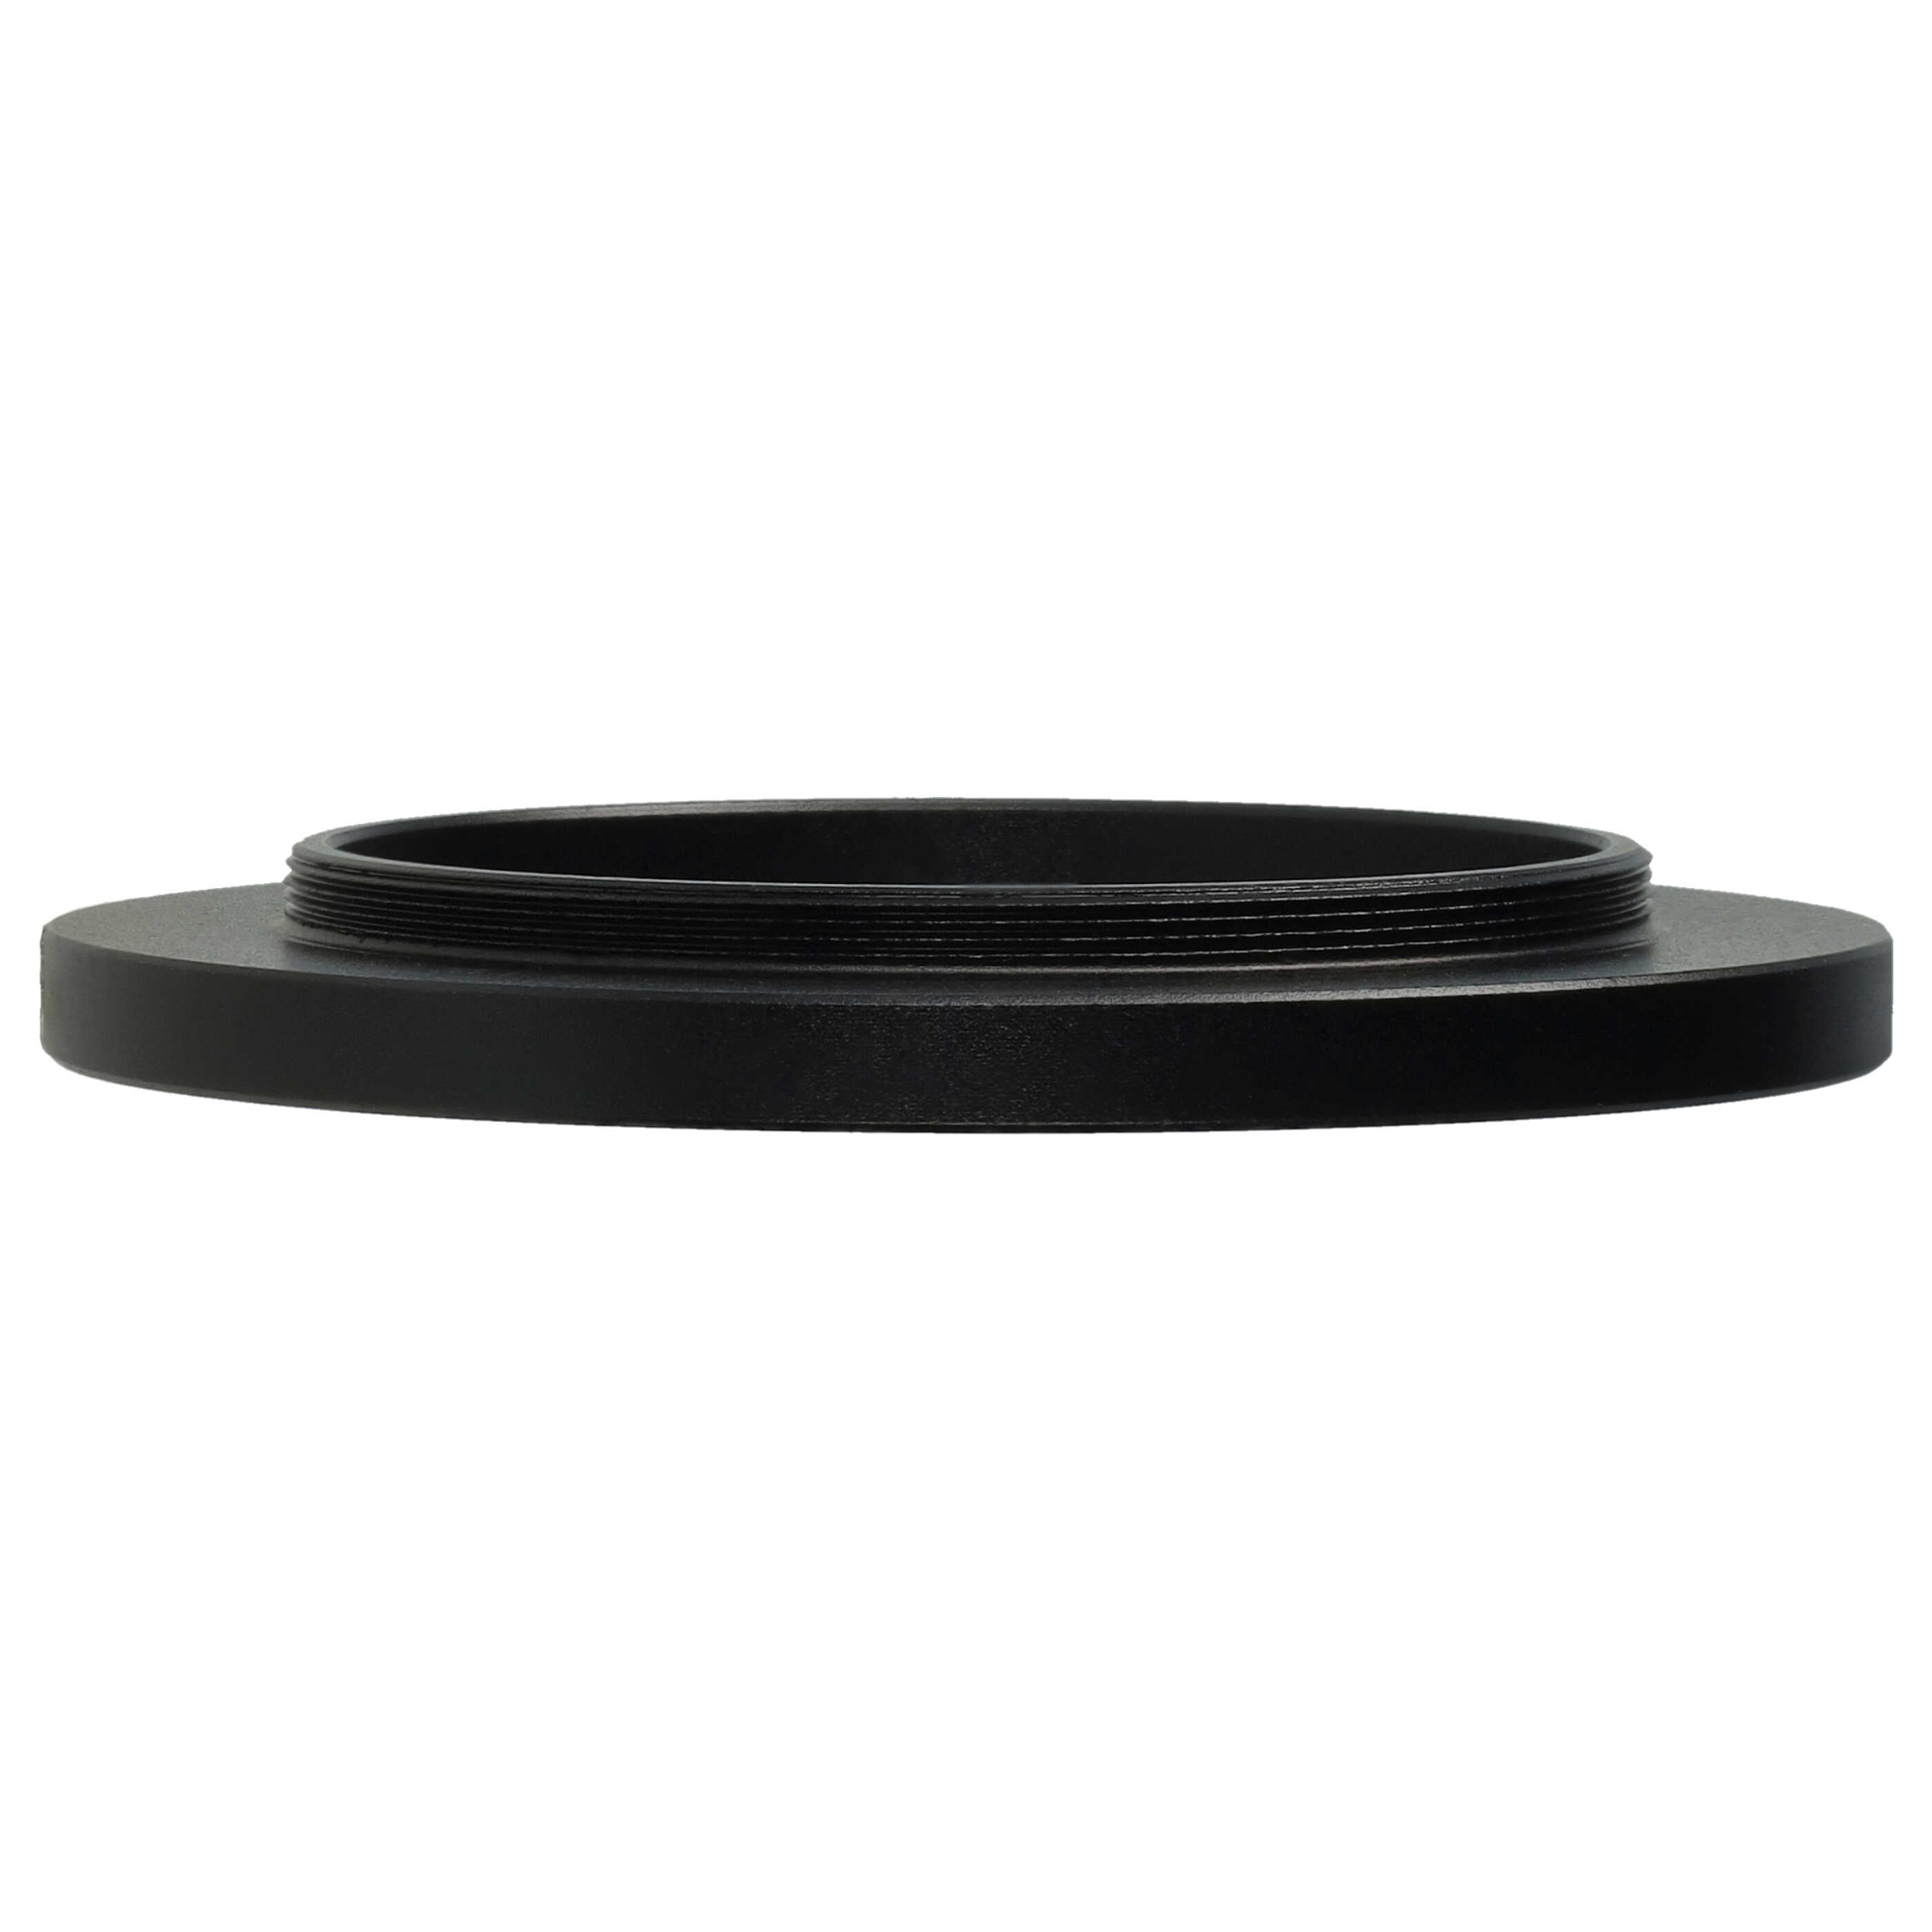 Step-Up-Ring Adapter 40,5 mm auf 52 mm passend für diverse Kamera-Objektive - Filteradapter